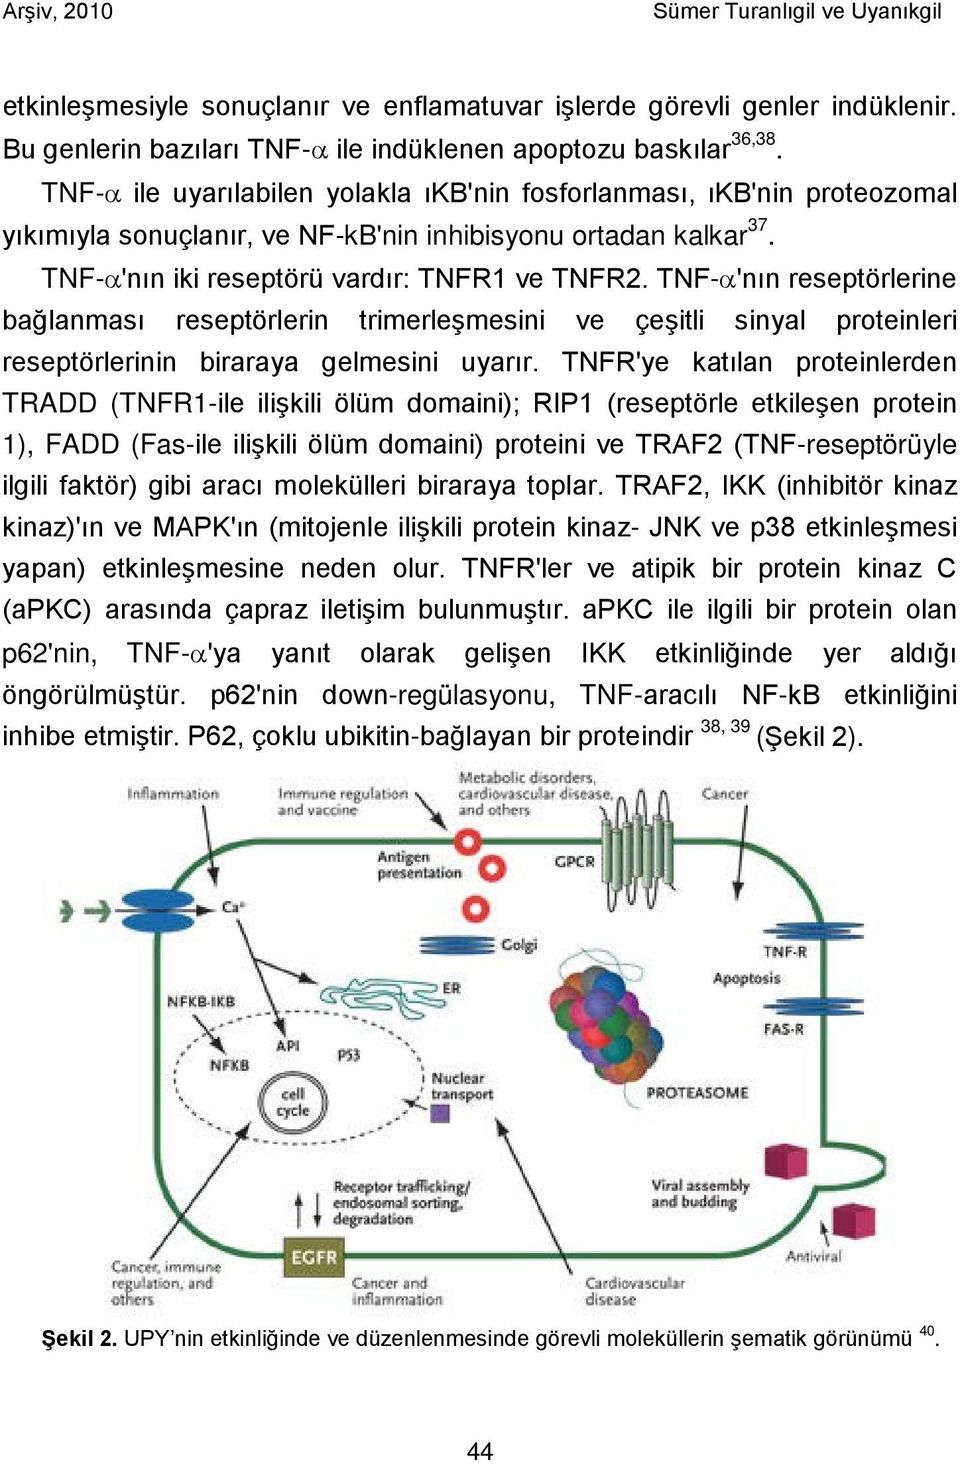 TNF-α'nın reseptörlerine bağlanması reseptörlerin trimerleşmesini ve çeşitli sinyal proteinleri reseptörlerinin biraraya gelmesini uyarır.